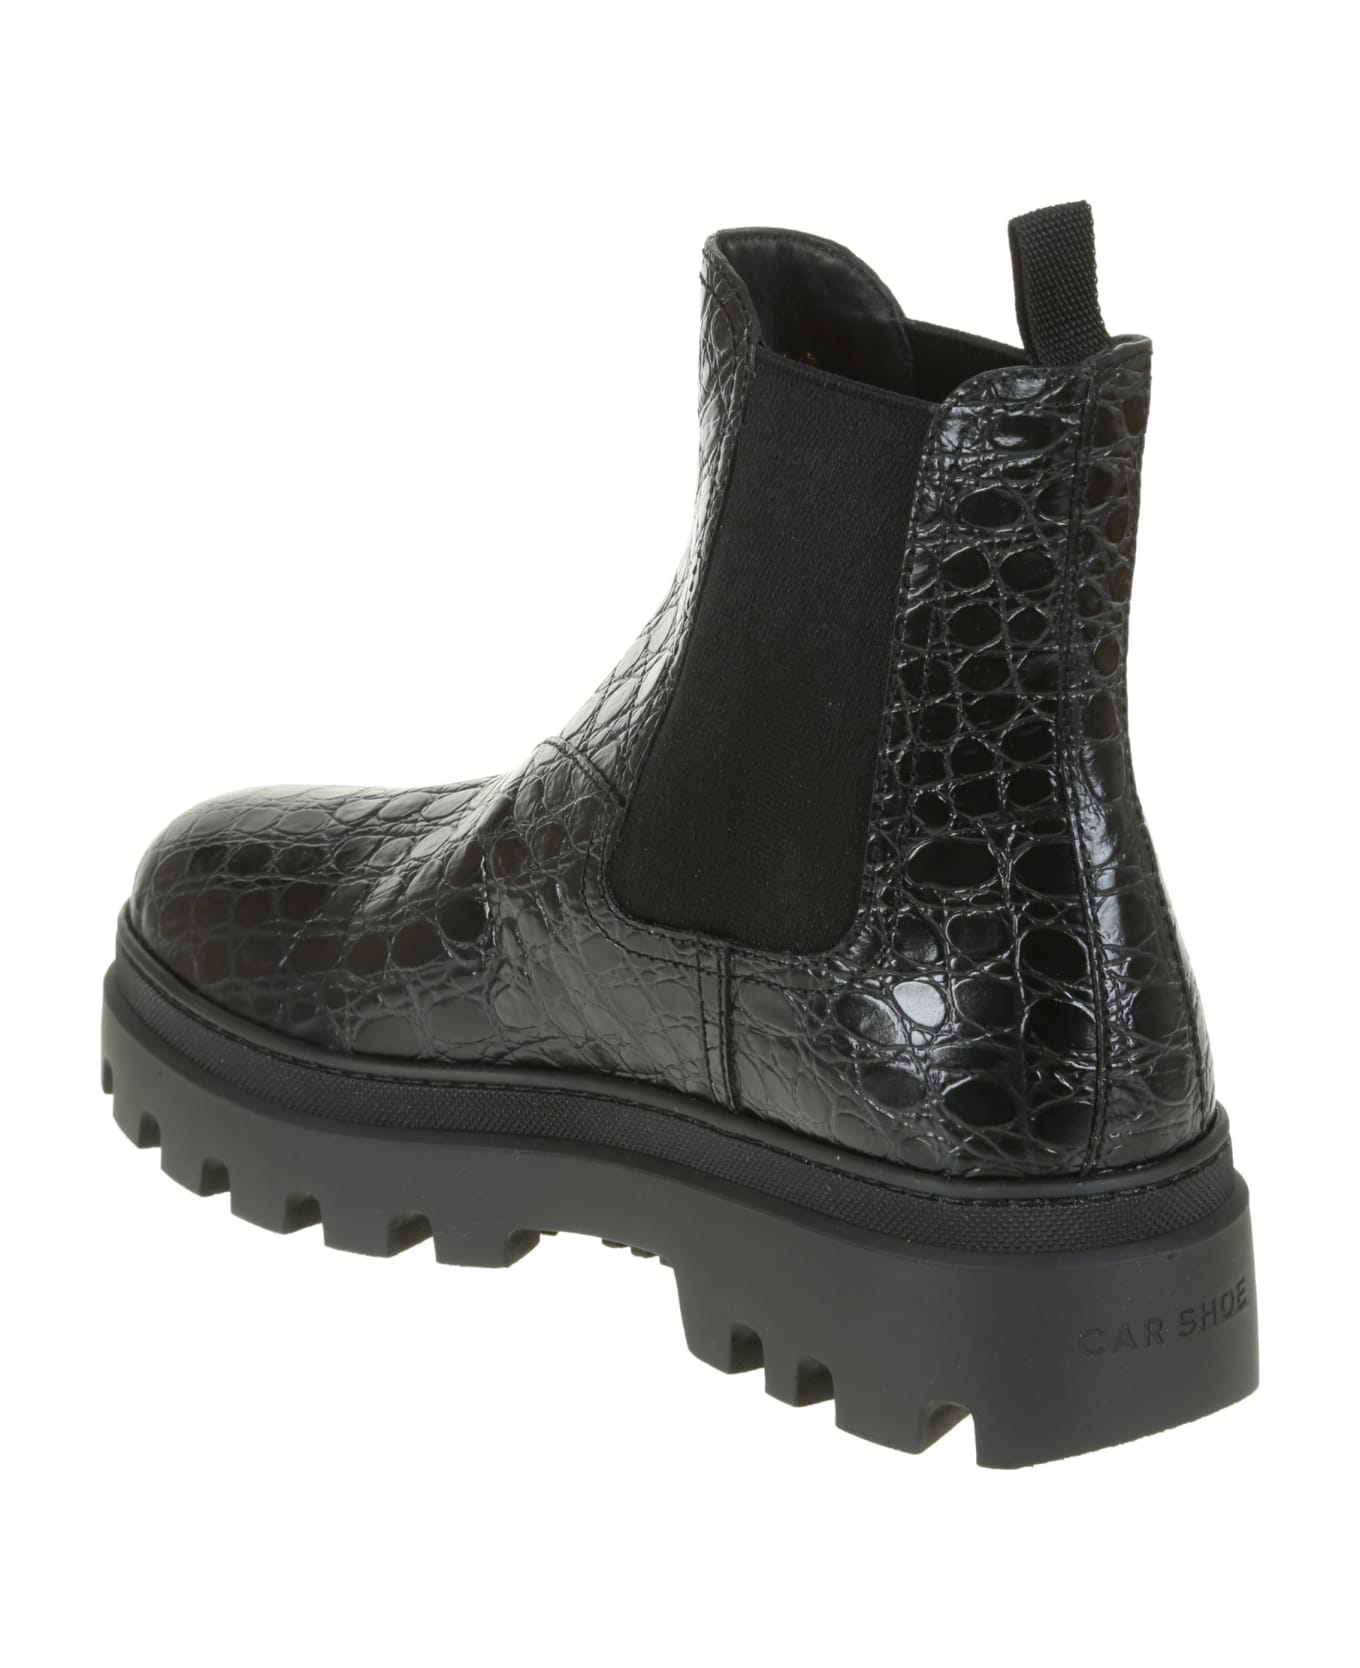 Car Shoe Boots - Black